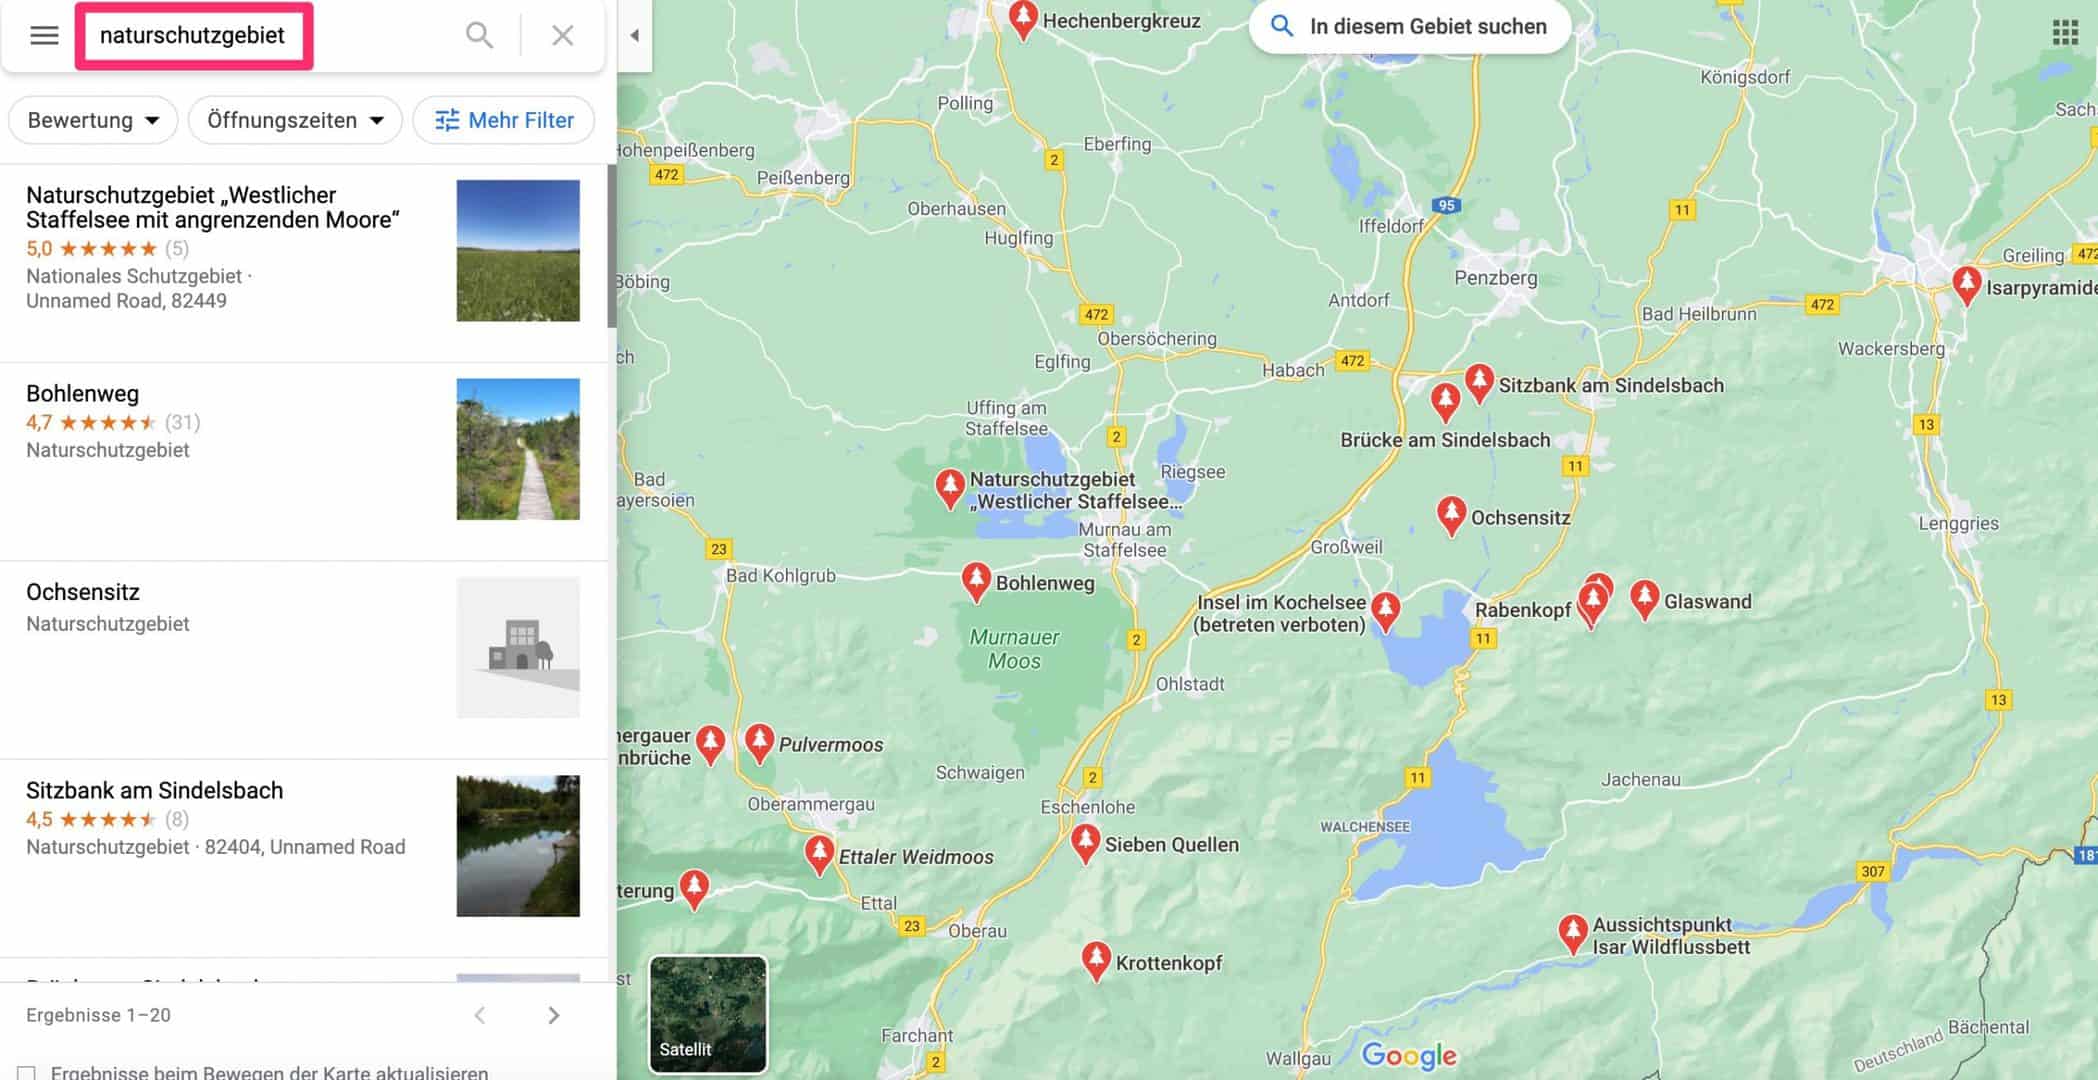 Naturschutzgebiet-suchen-und-finden-Google-Maps